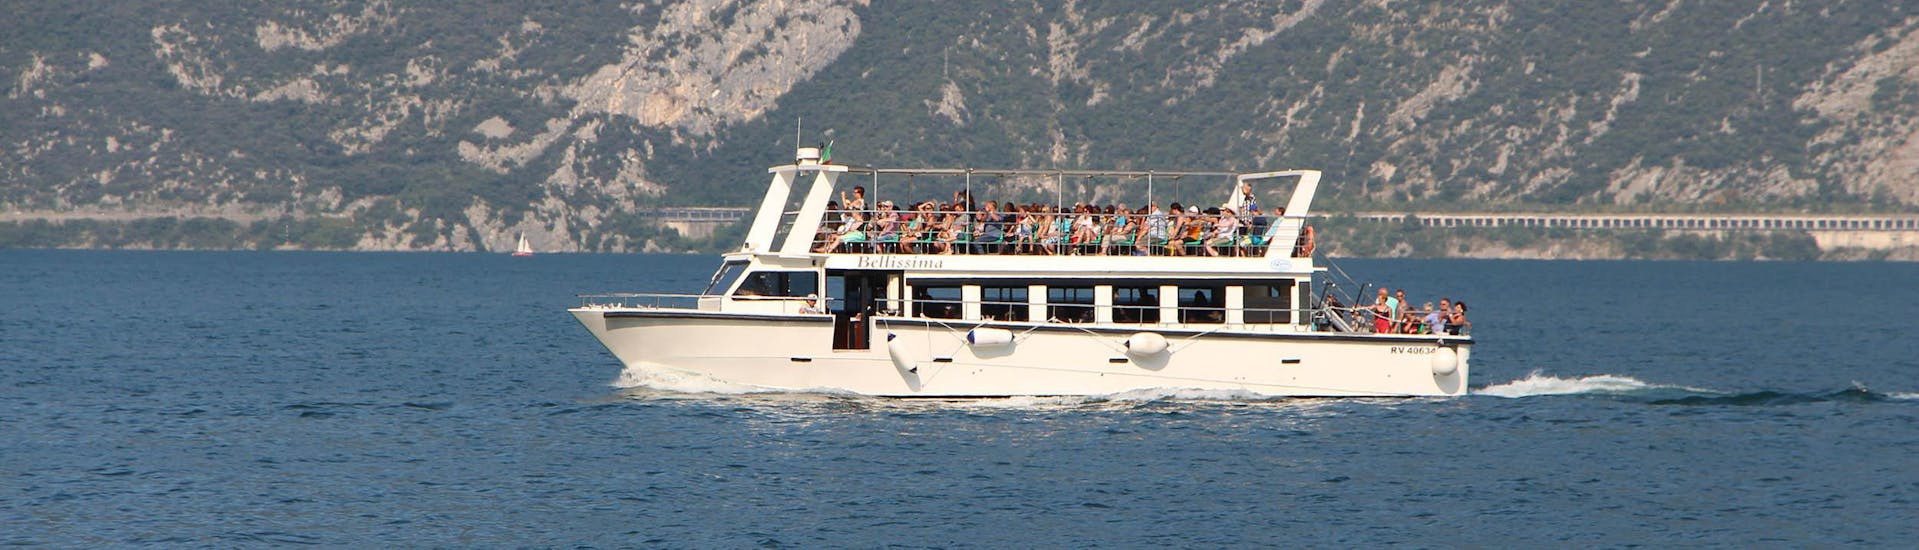 Das Boot von Garda Escursioni während einer Fahrt auf dem Gardasee.